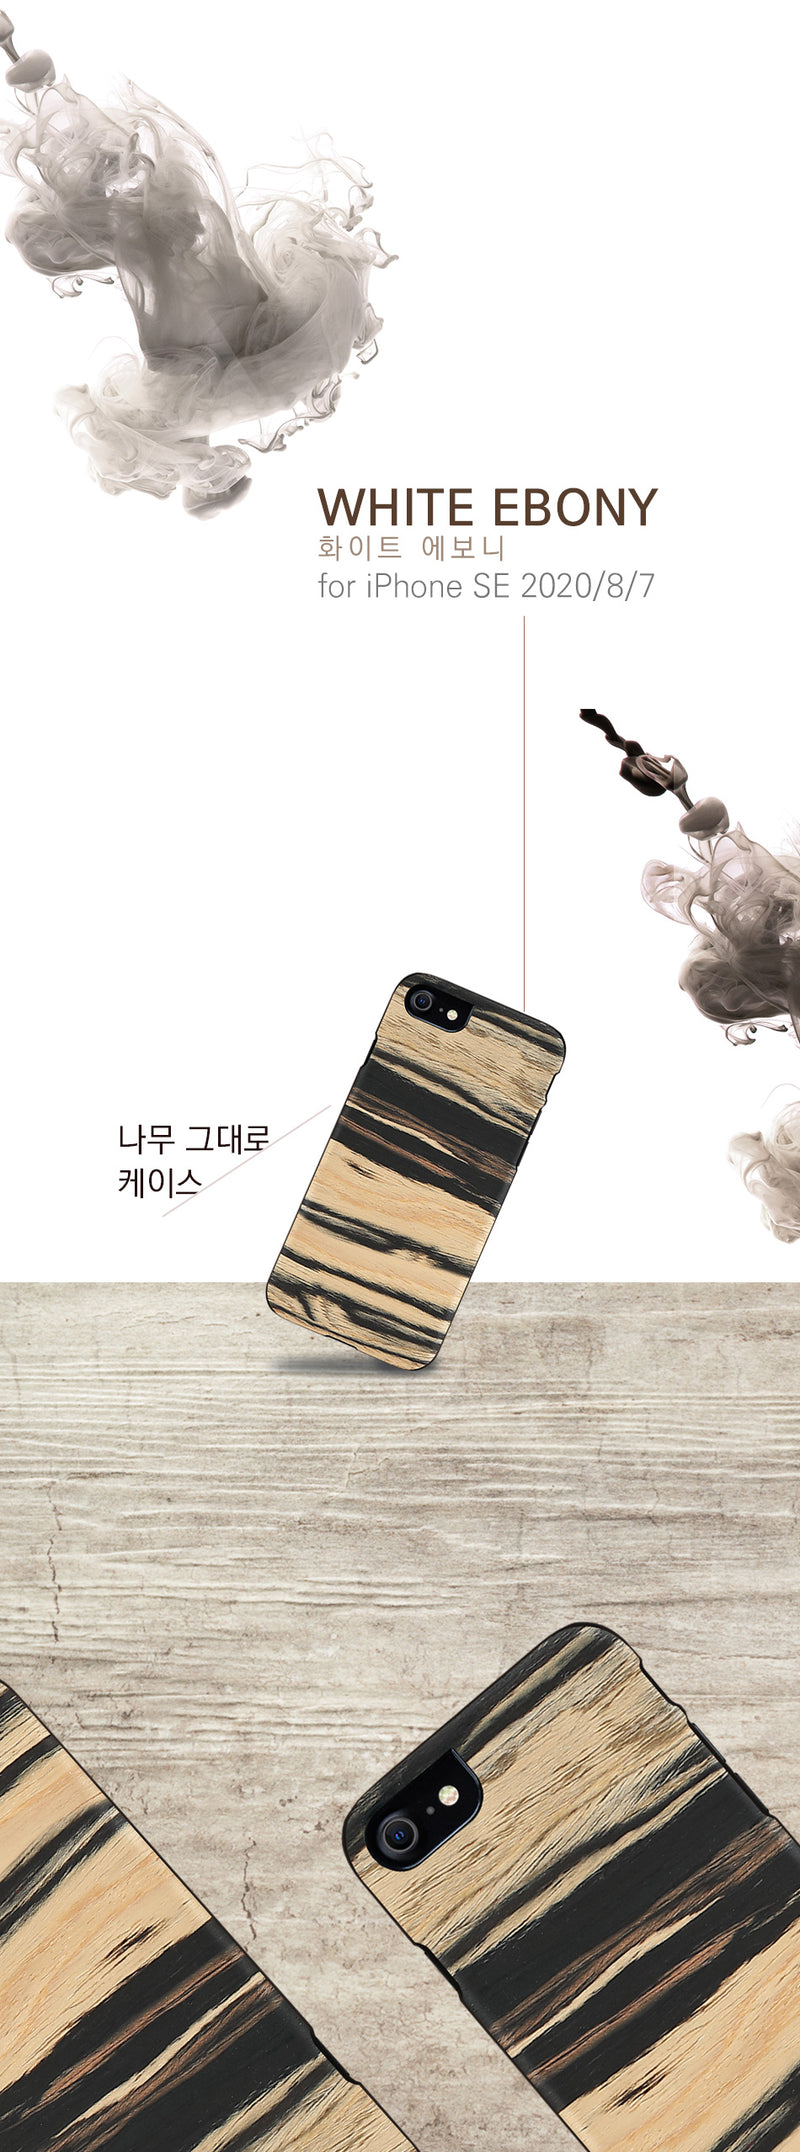 MAN&amp;WOOD case for iPhone 7/8 white ebony black